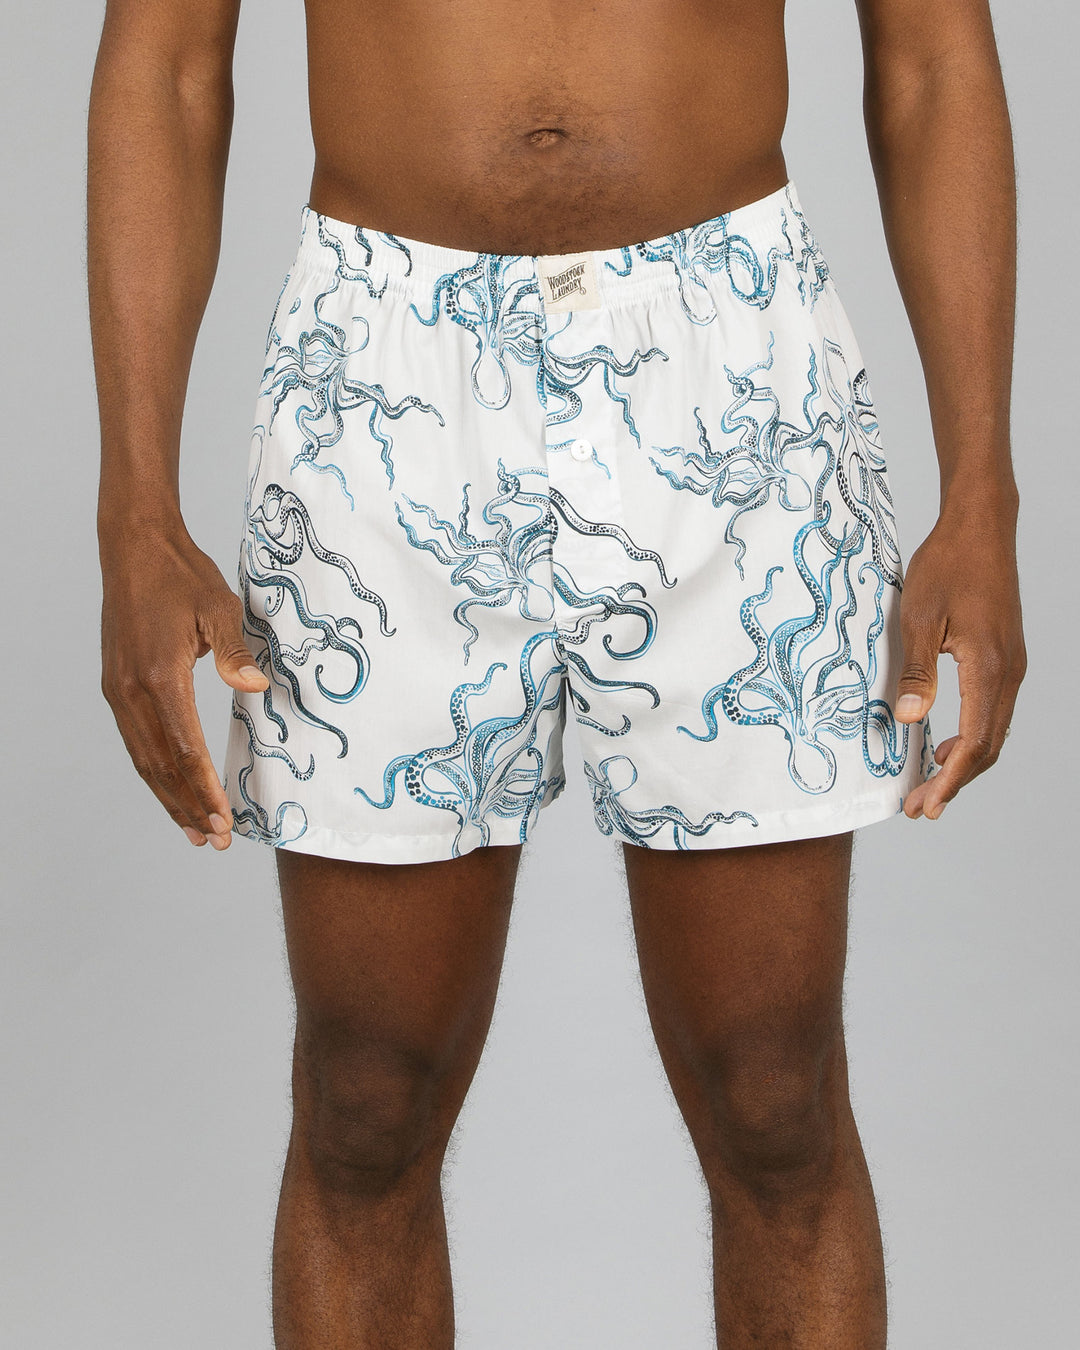 Mens Boxer Shorts Octopus Indigo Front - Woodstock Laundry